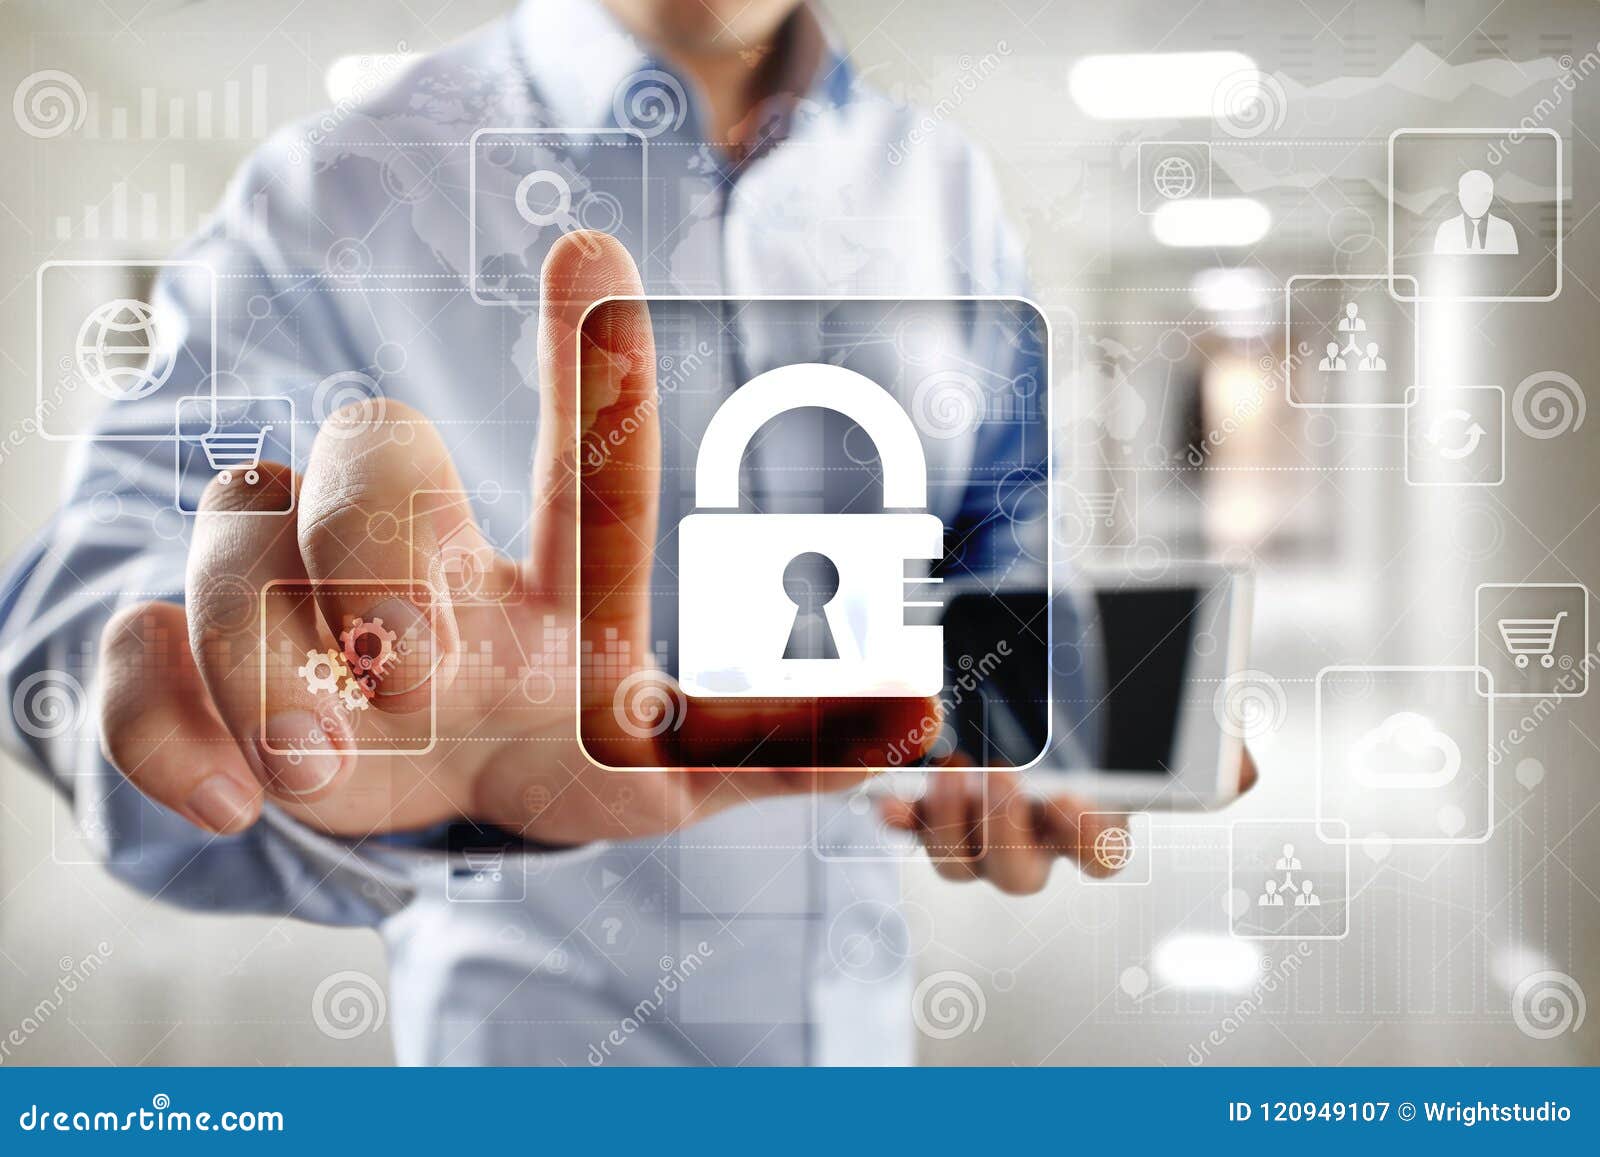 Dataskydd, Cybersäkerhet, informationssäkerhet och kryptering internetteknologi och affärsidé Faktisk skärm med hänglåssymboler